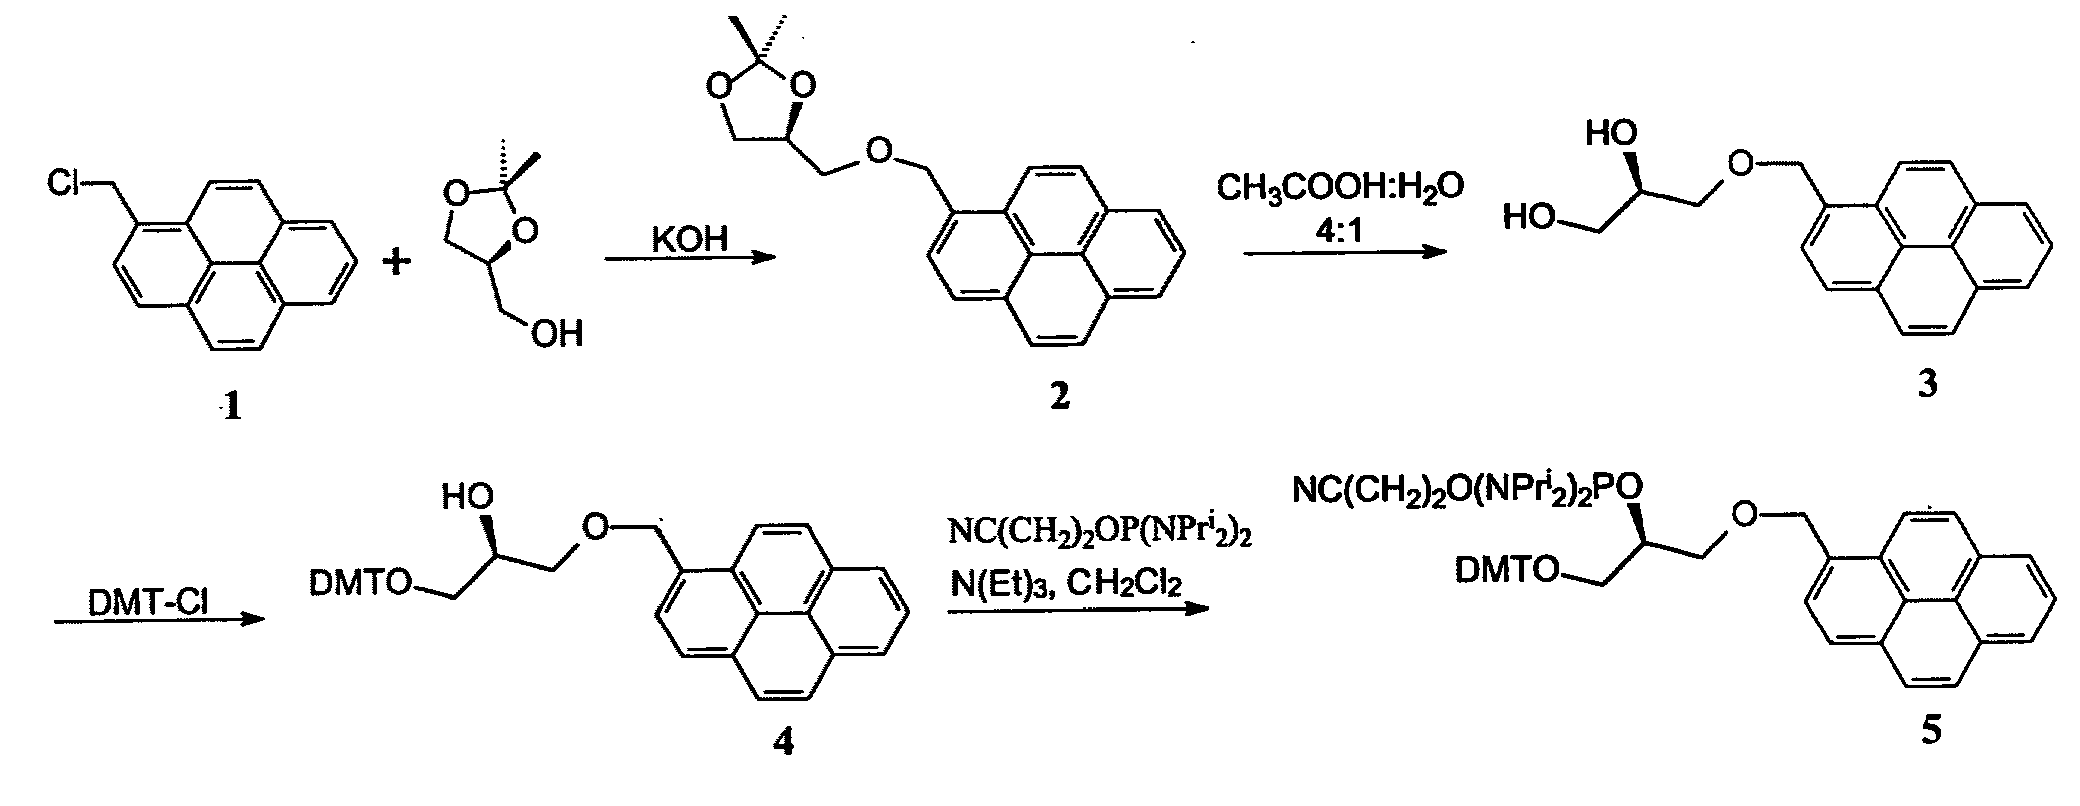 Pseudonucleotide comprising an intercalator